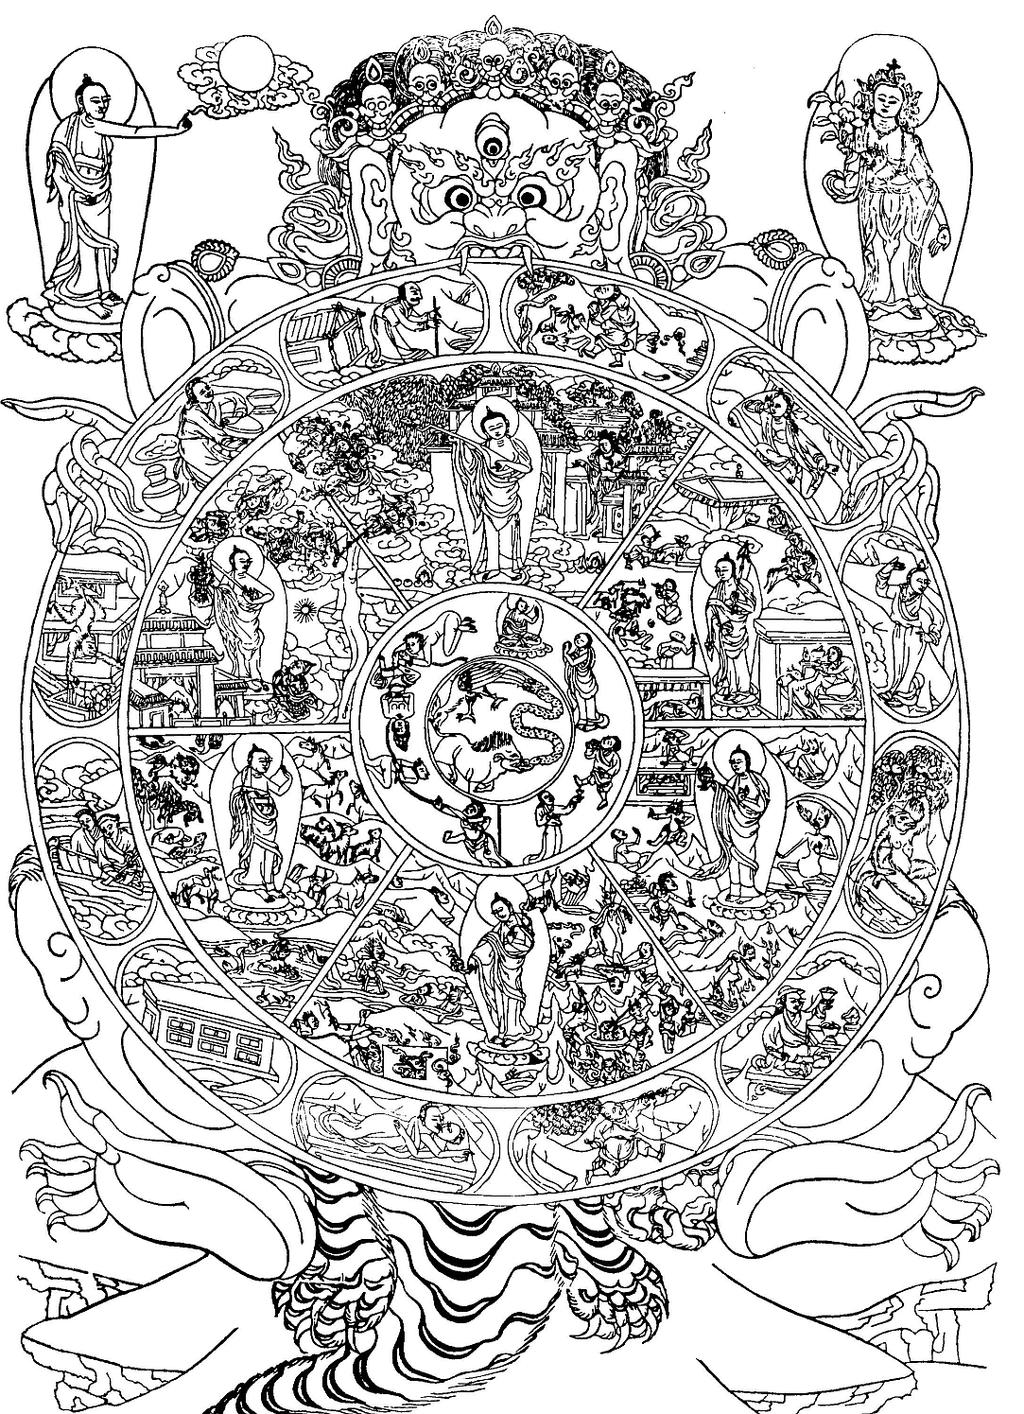 2 Pro pochopení této představy je vhodné vyjít například z tibetského zobrazení kola ţivota, bytí, (sa. bhavačakra, tib. sidpä khorlo /srid pa khor lo/) zobrazujícího šest říší či stavů existence.